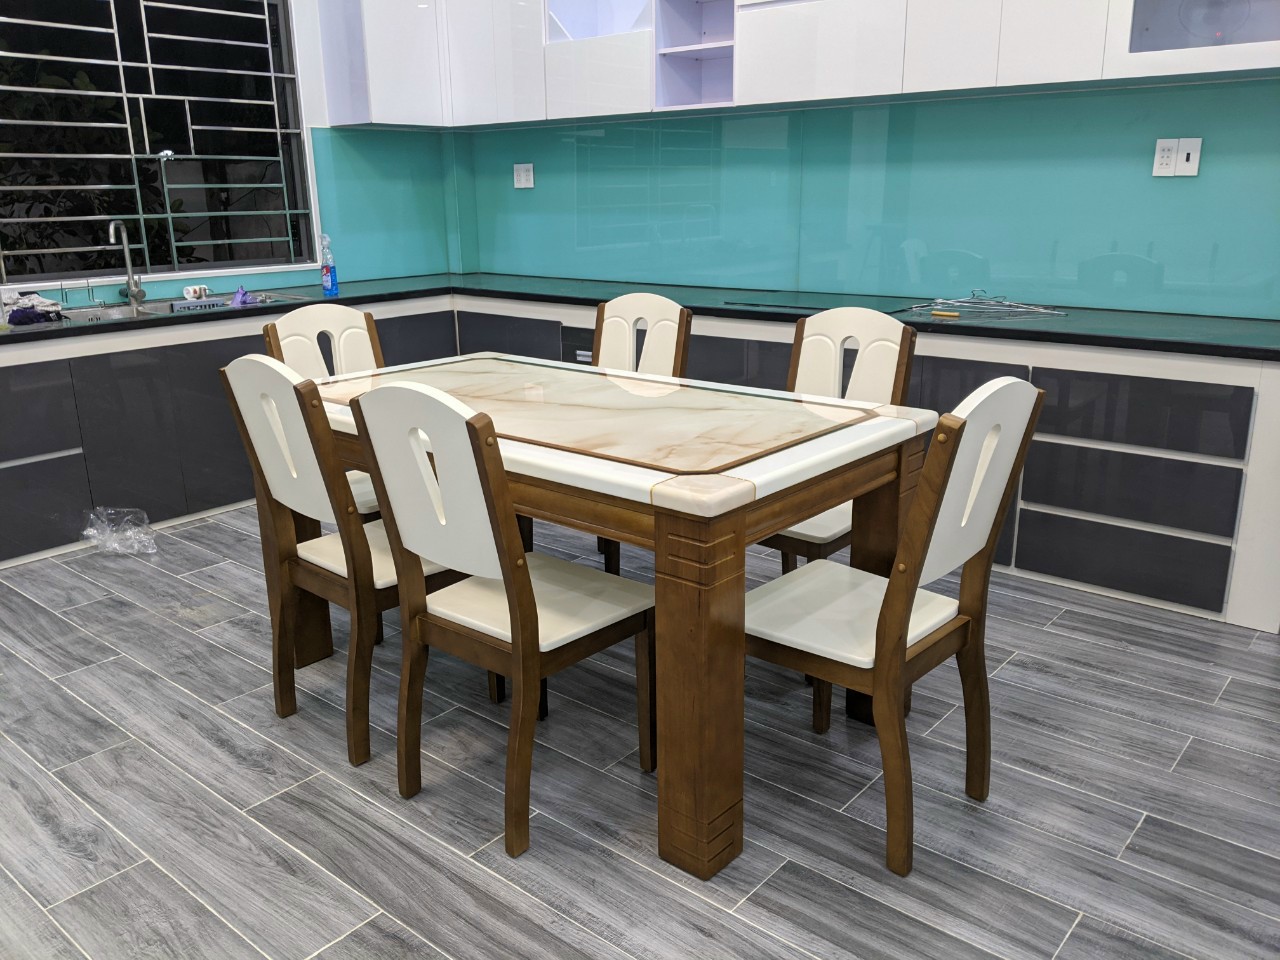 Bộ bàn ăn mặt đá cao cấp Đồ Gỗ Cường Nga 8 ghế là sự kết hợp hoàn hảo giữa chất liệu gỗ tự nhiên và đá cao cấp. Bộ bàn ăn sẽ làm cho không gian của bạn trở nên sang trọng và ấn tượng. Thiết kế đơn giản, tinh tế giúp mang đến không gian ấm cúng cho các bữa ăn gia đình.